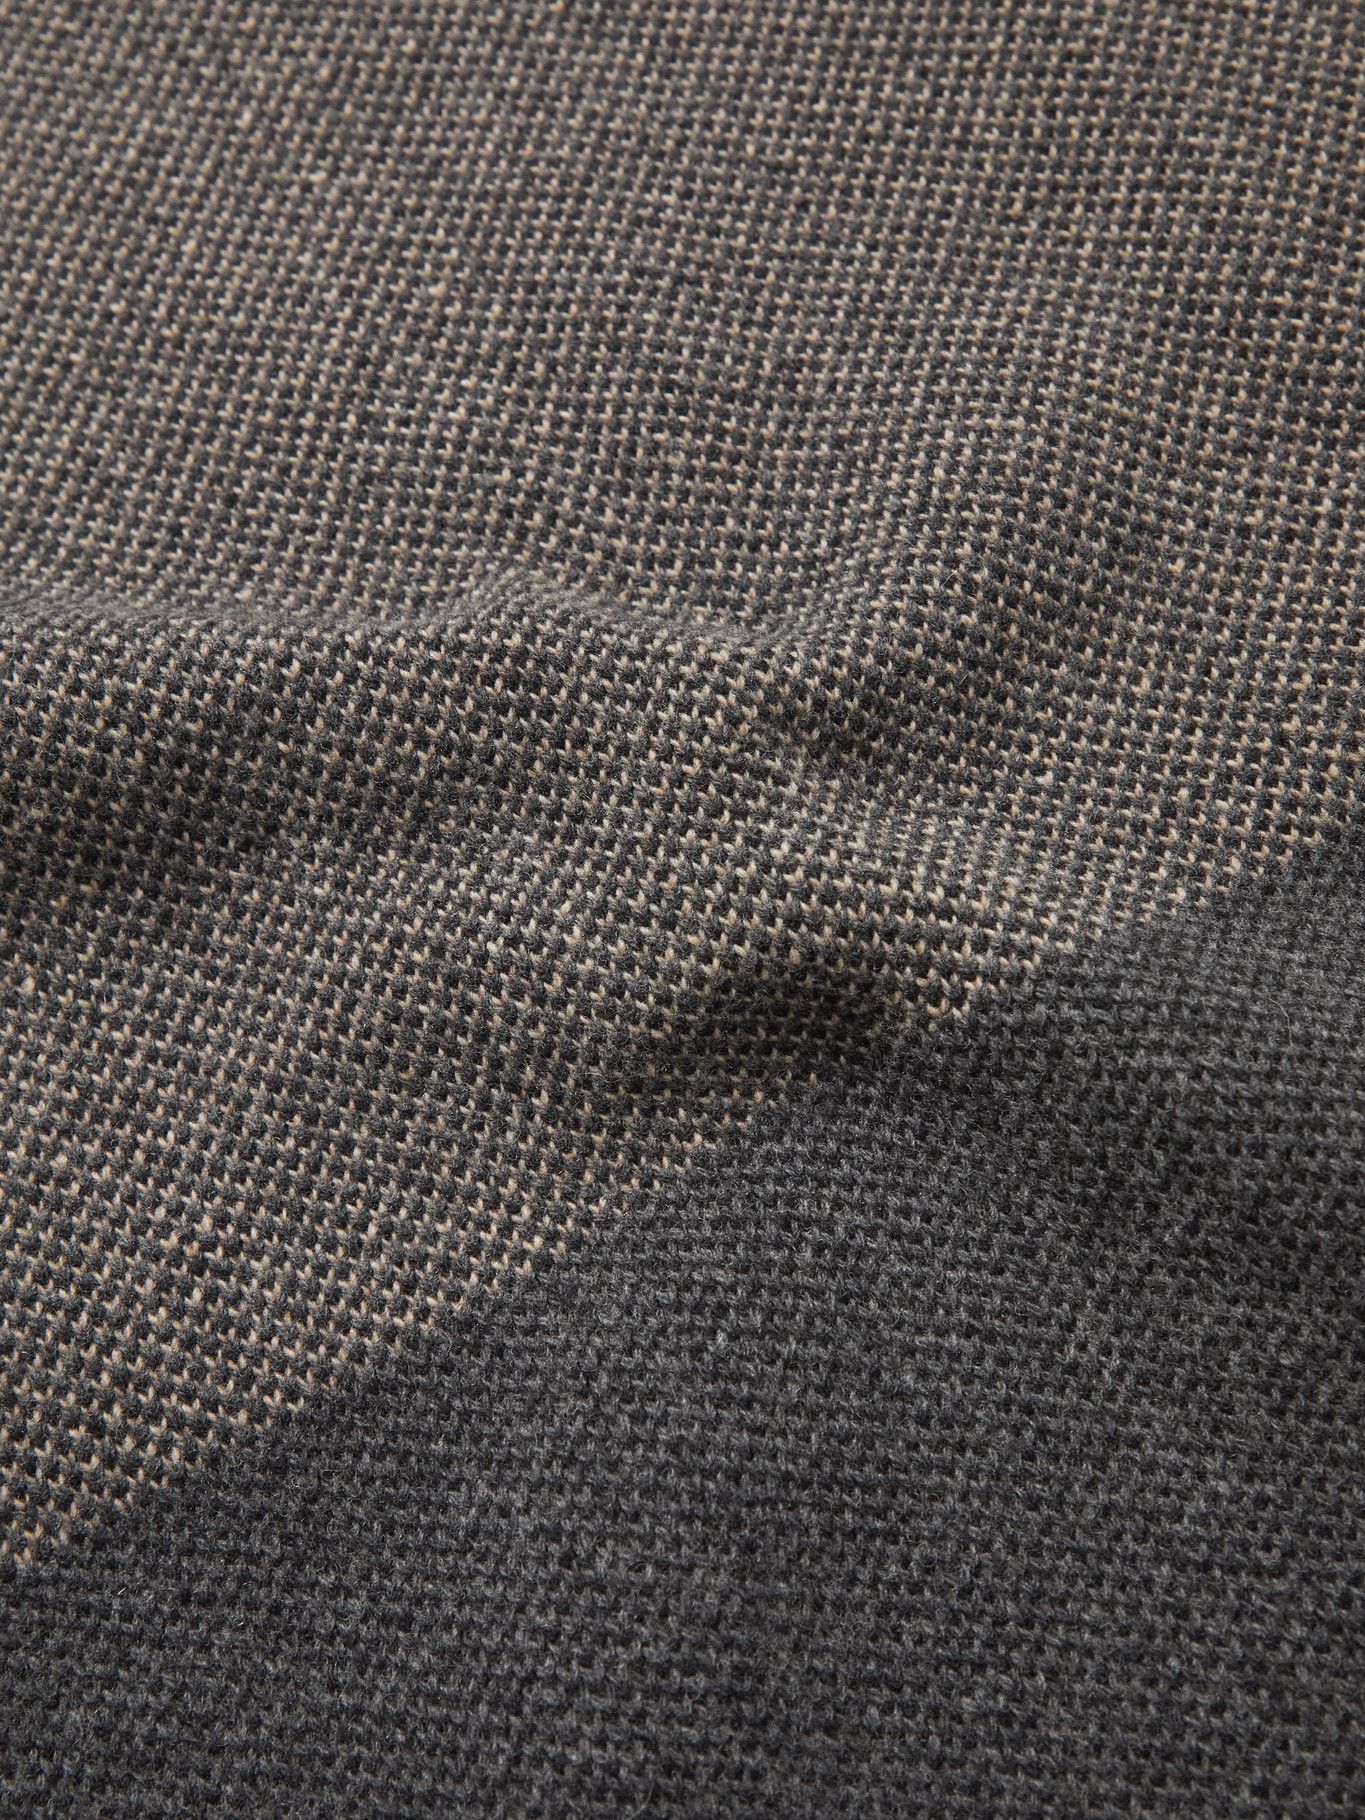 Oliver Spencer - Blenheim Patchwork Wool Sweater - Black